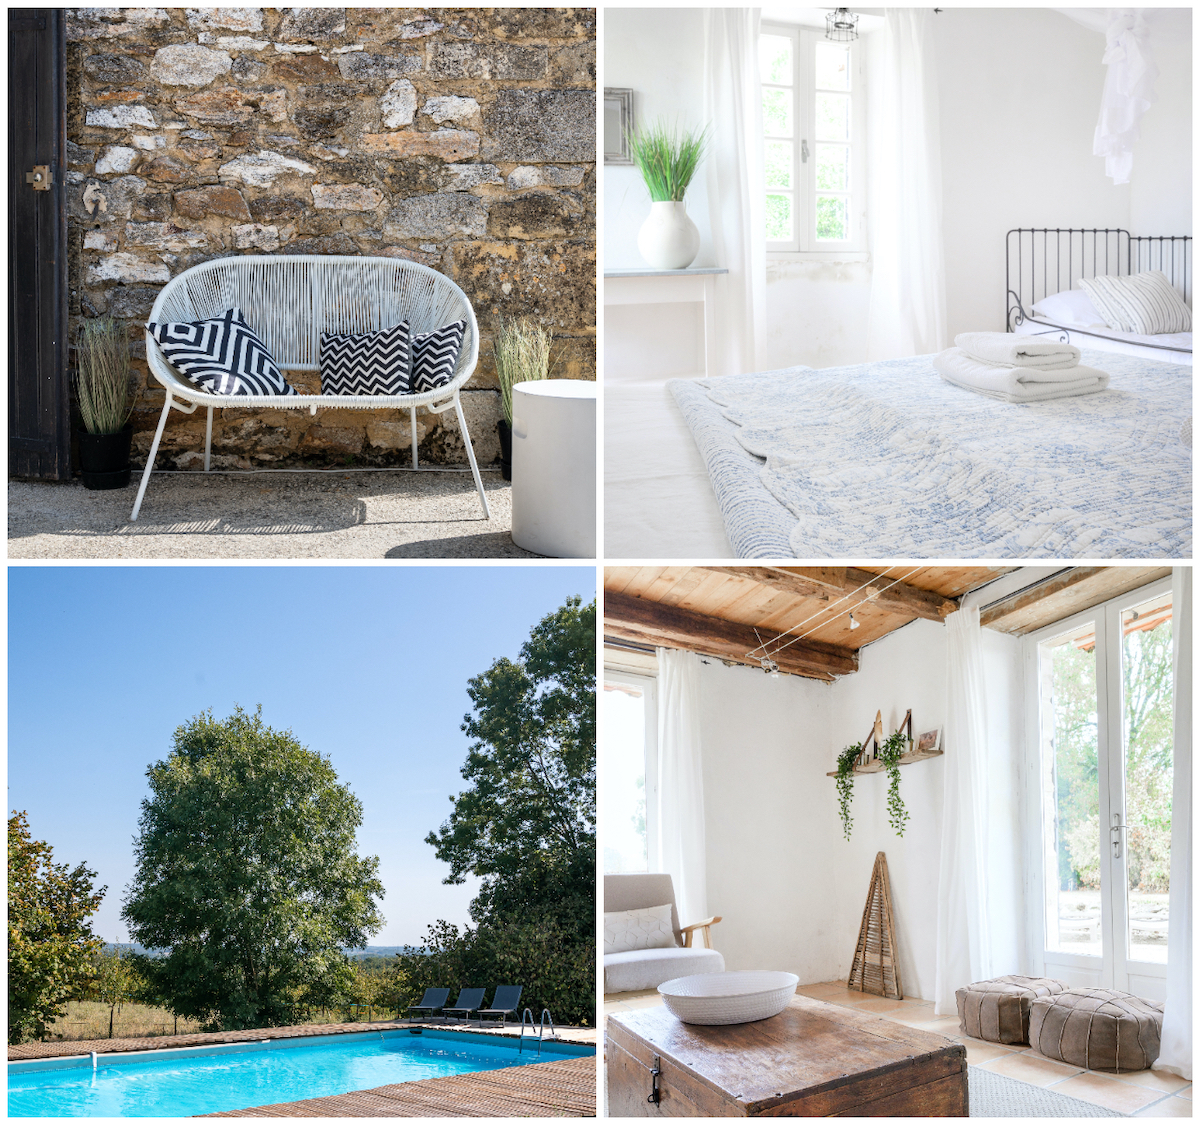 Videpot vakantiehuis met zwembad in de Dordogne